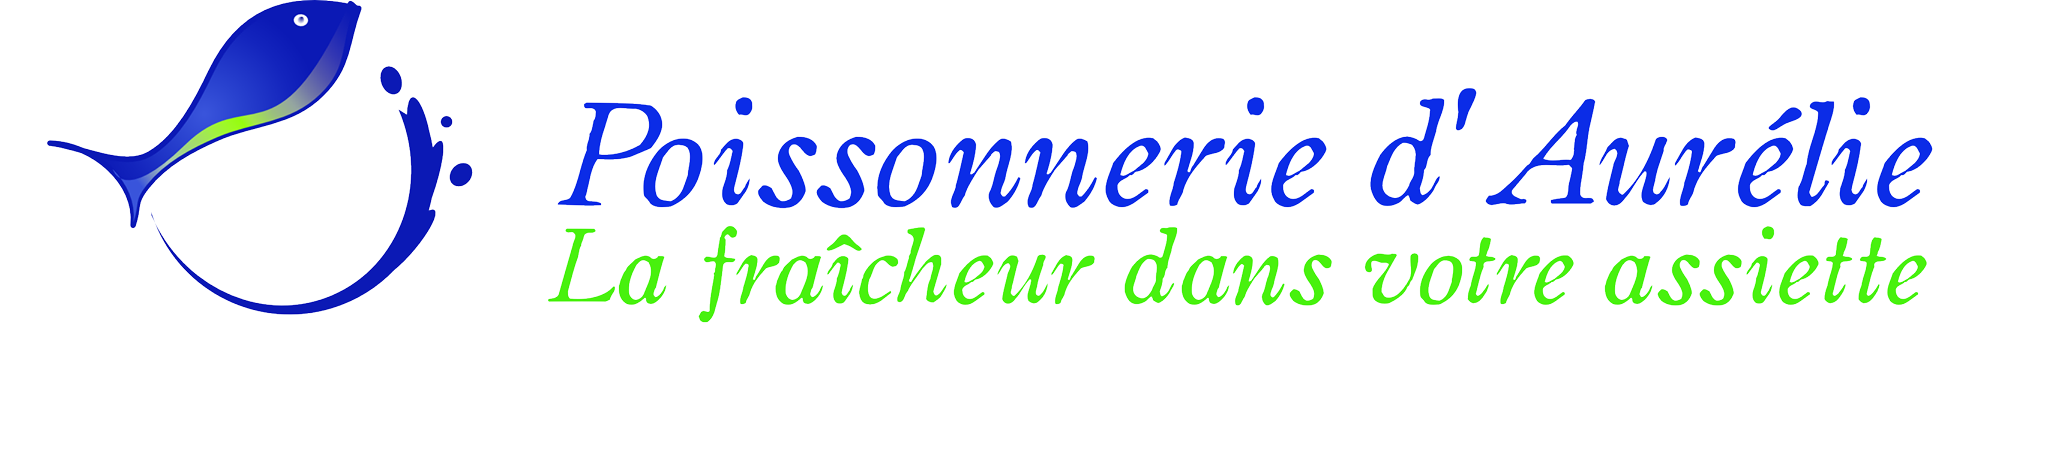 logo Poissonerie d_Aurélie bis.png